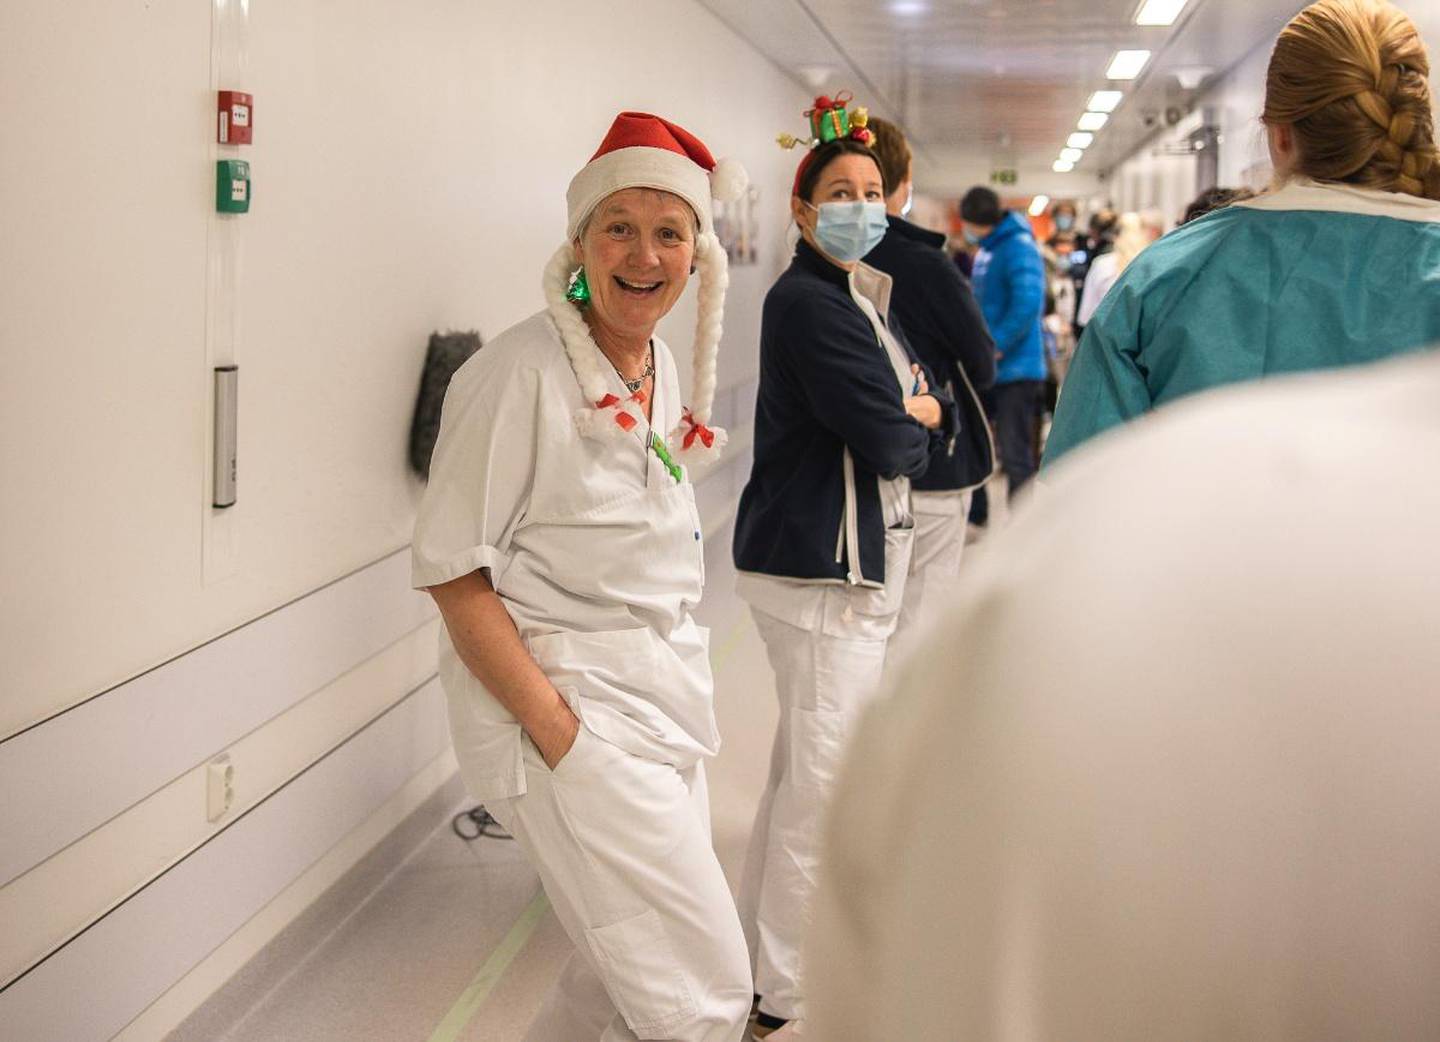 Julestemning: – Jeg er veldig glad i jula, og begynner og nisse tidlig, sier Merete Johannessen. Hun er seksjonsleder for Gastroentorologi ved Kalnes.